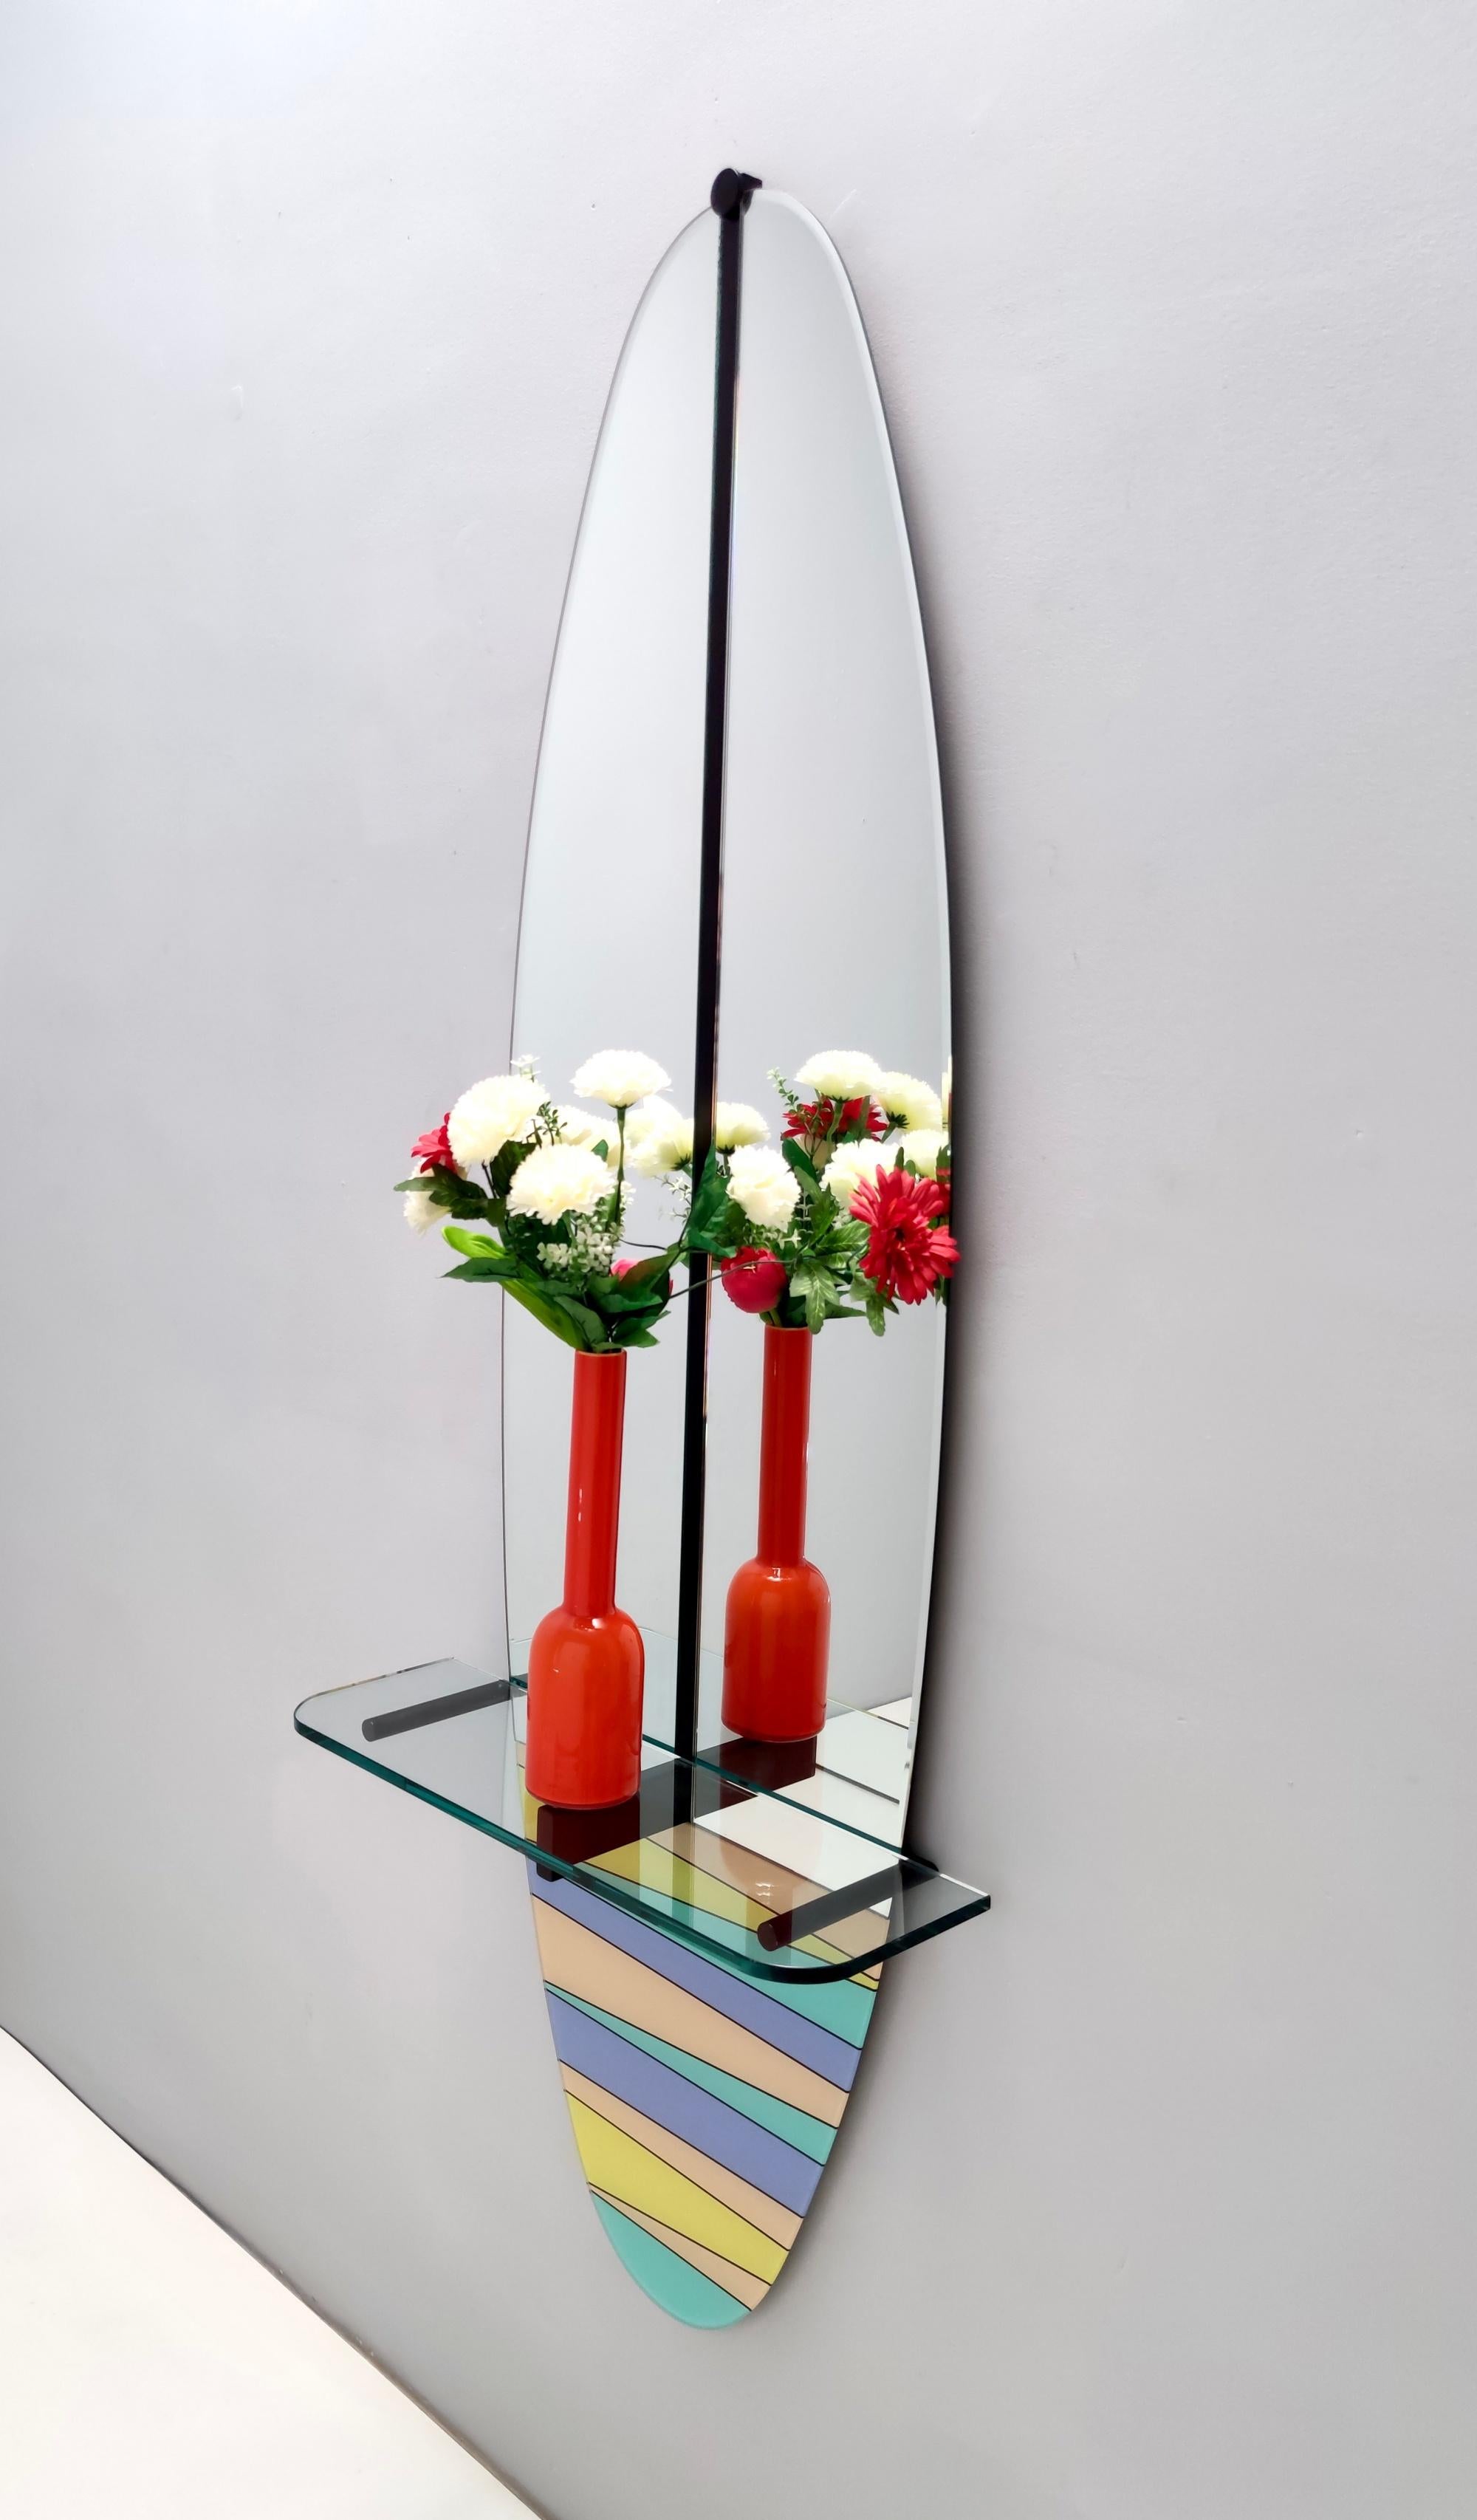 Fabriqué en Italie, années 1980.
Ce miroir présente un dos en hêtre multicouche, un cadre en métal verni, un plateau en cristal et un miroir sérigraphié multicolore.
Il peut présenter de légères traces d'utilisation puisqu'il est vintage, mais il